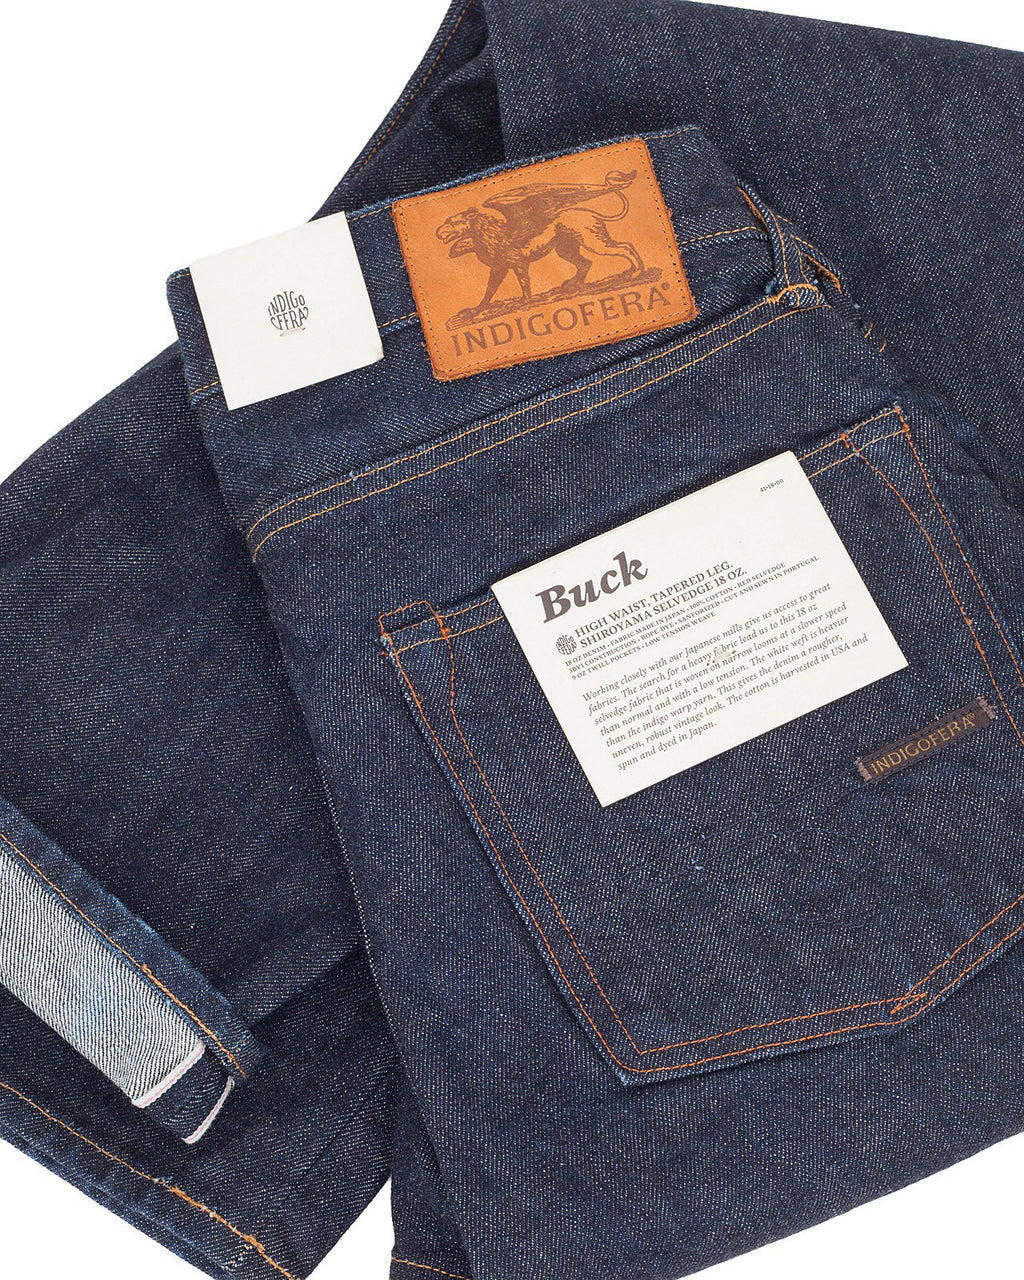 Indigofera Buck Jeans, Shiroyama Rinse